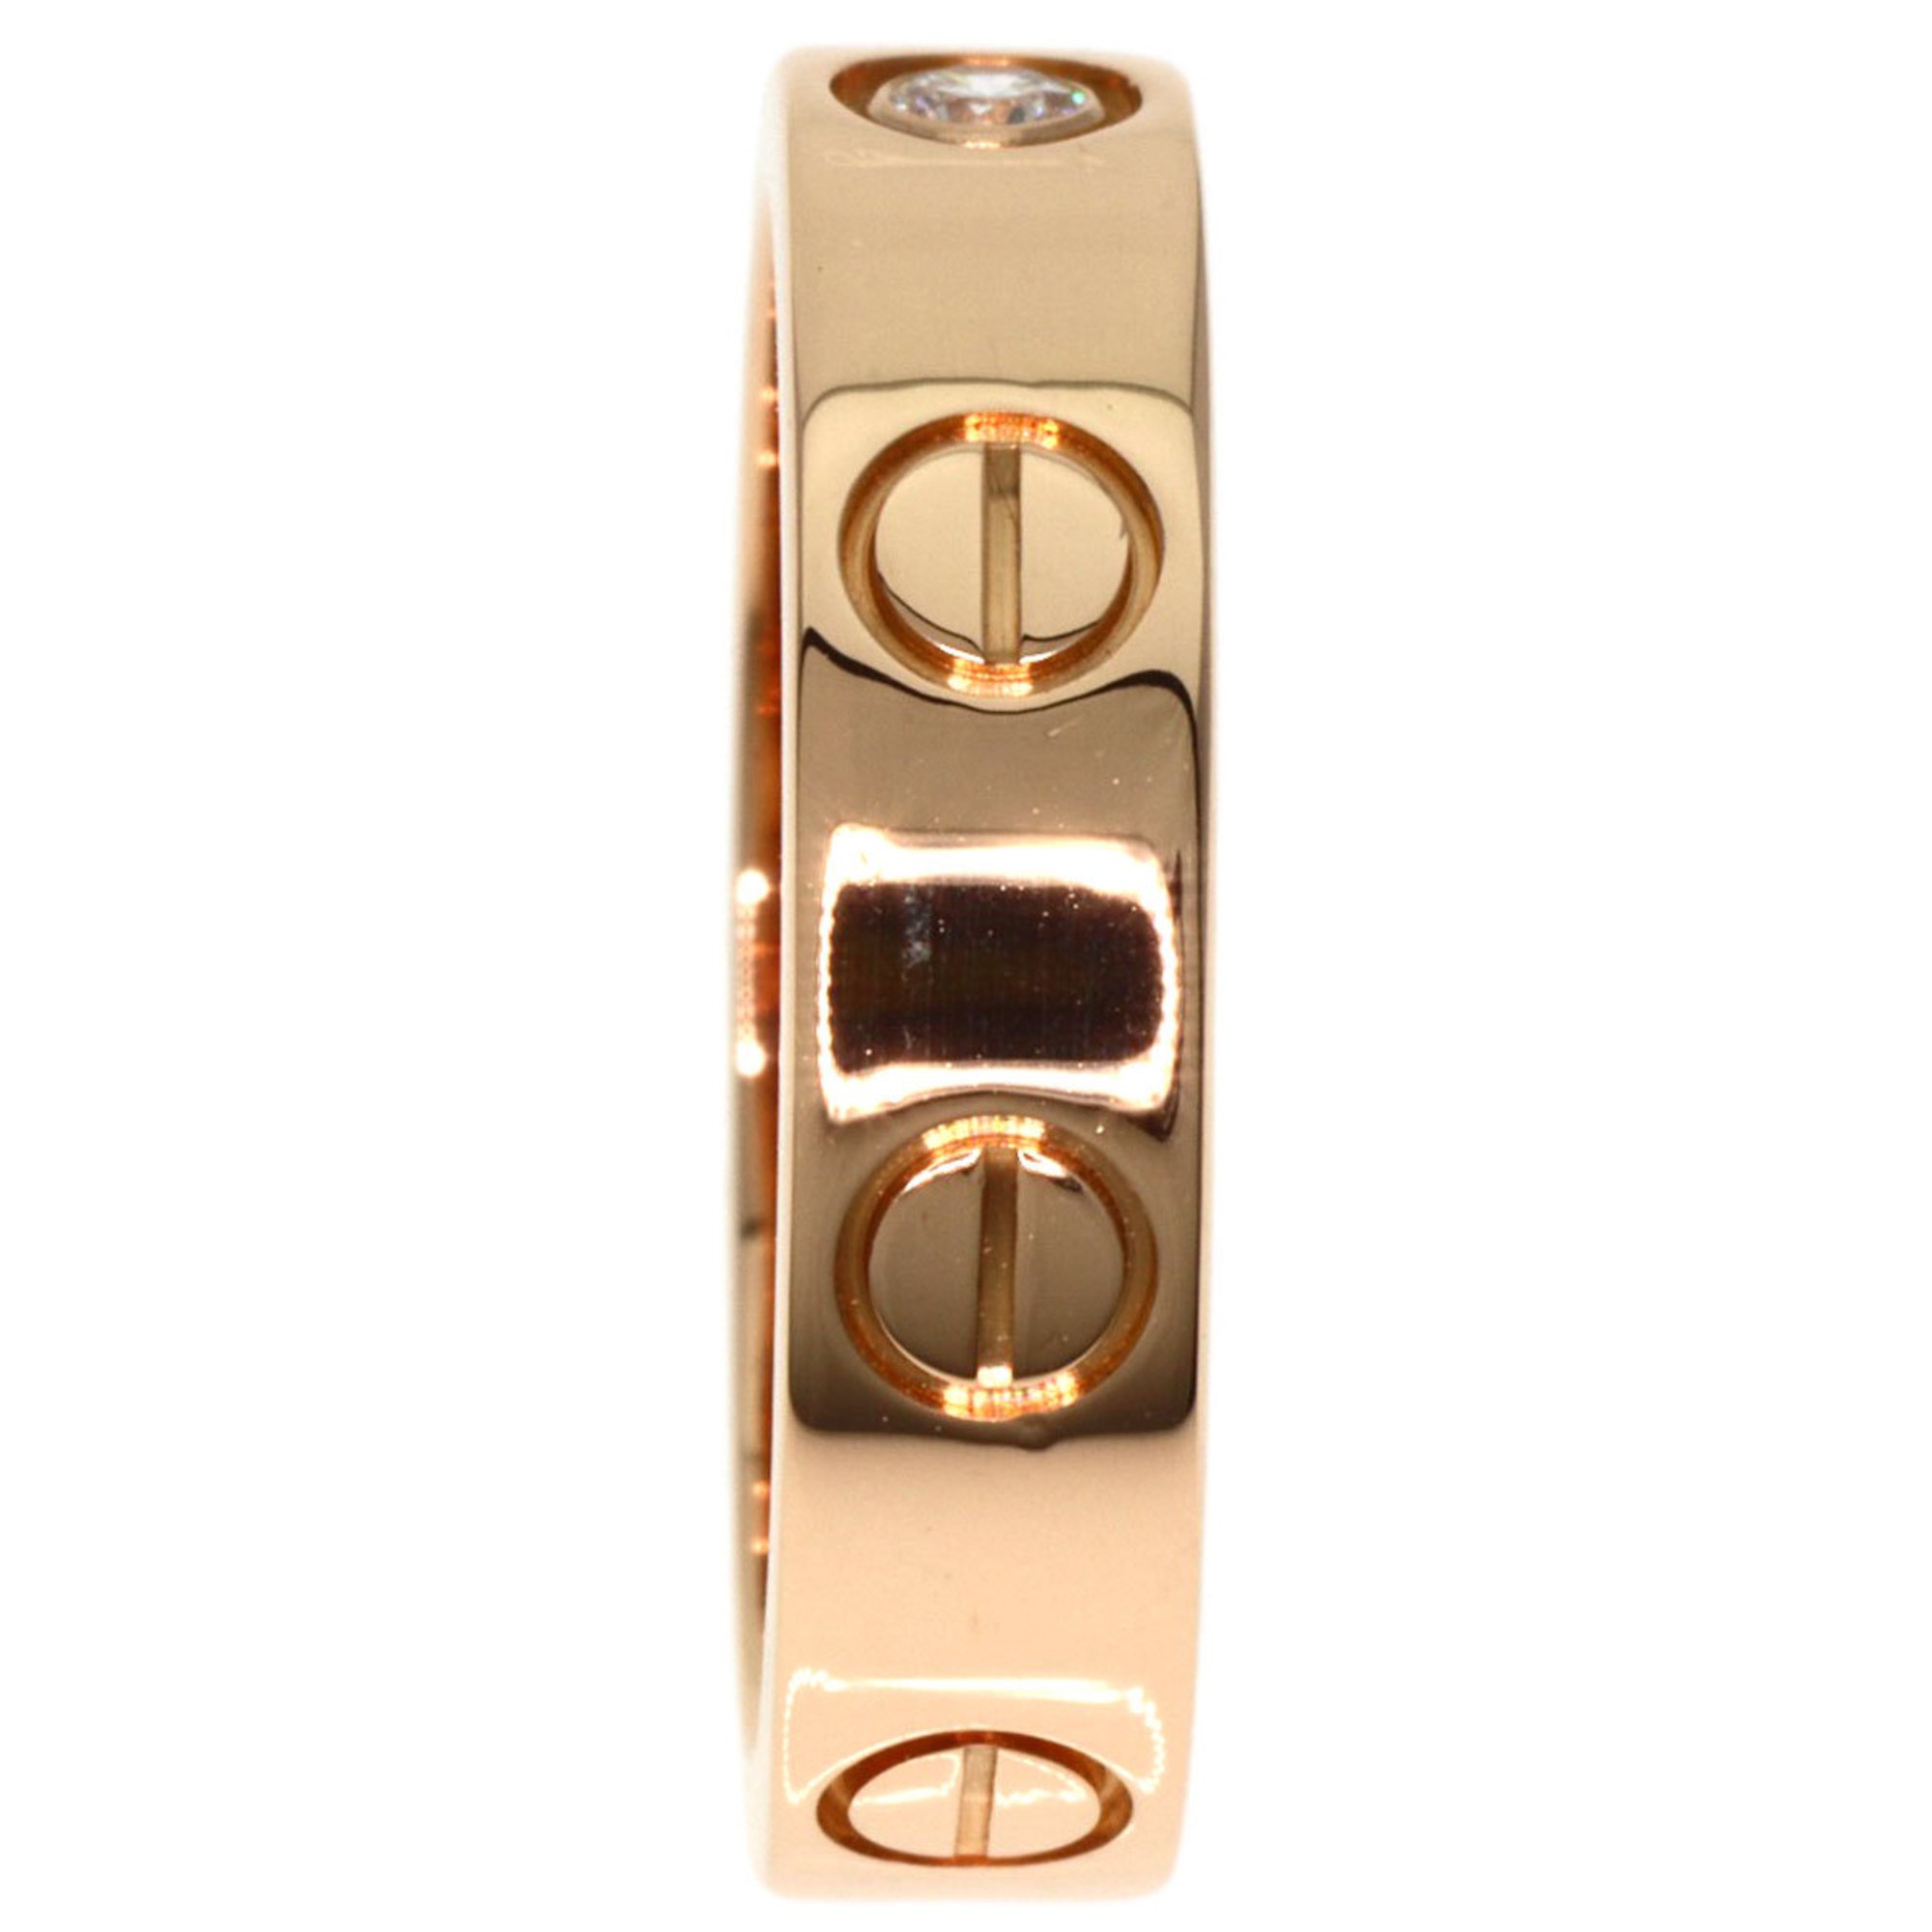 Cartier Love Ring 1P Diamond #45 K18 Pink Gold Women's